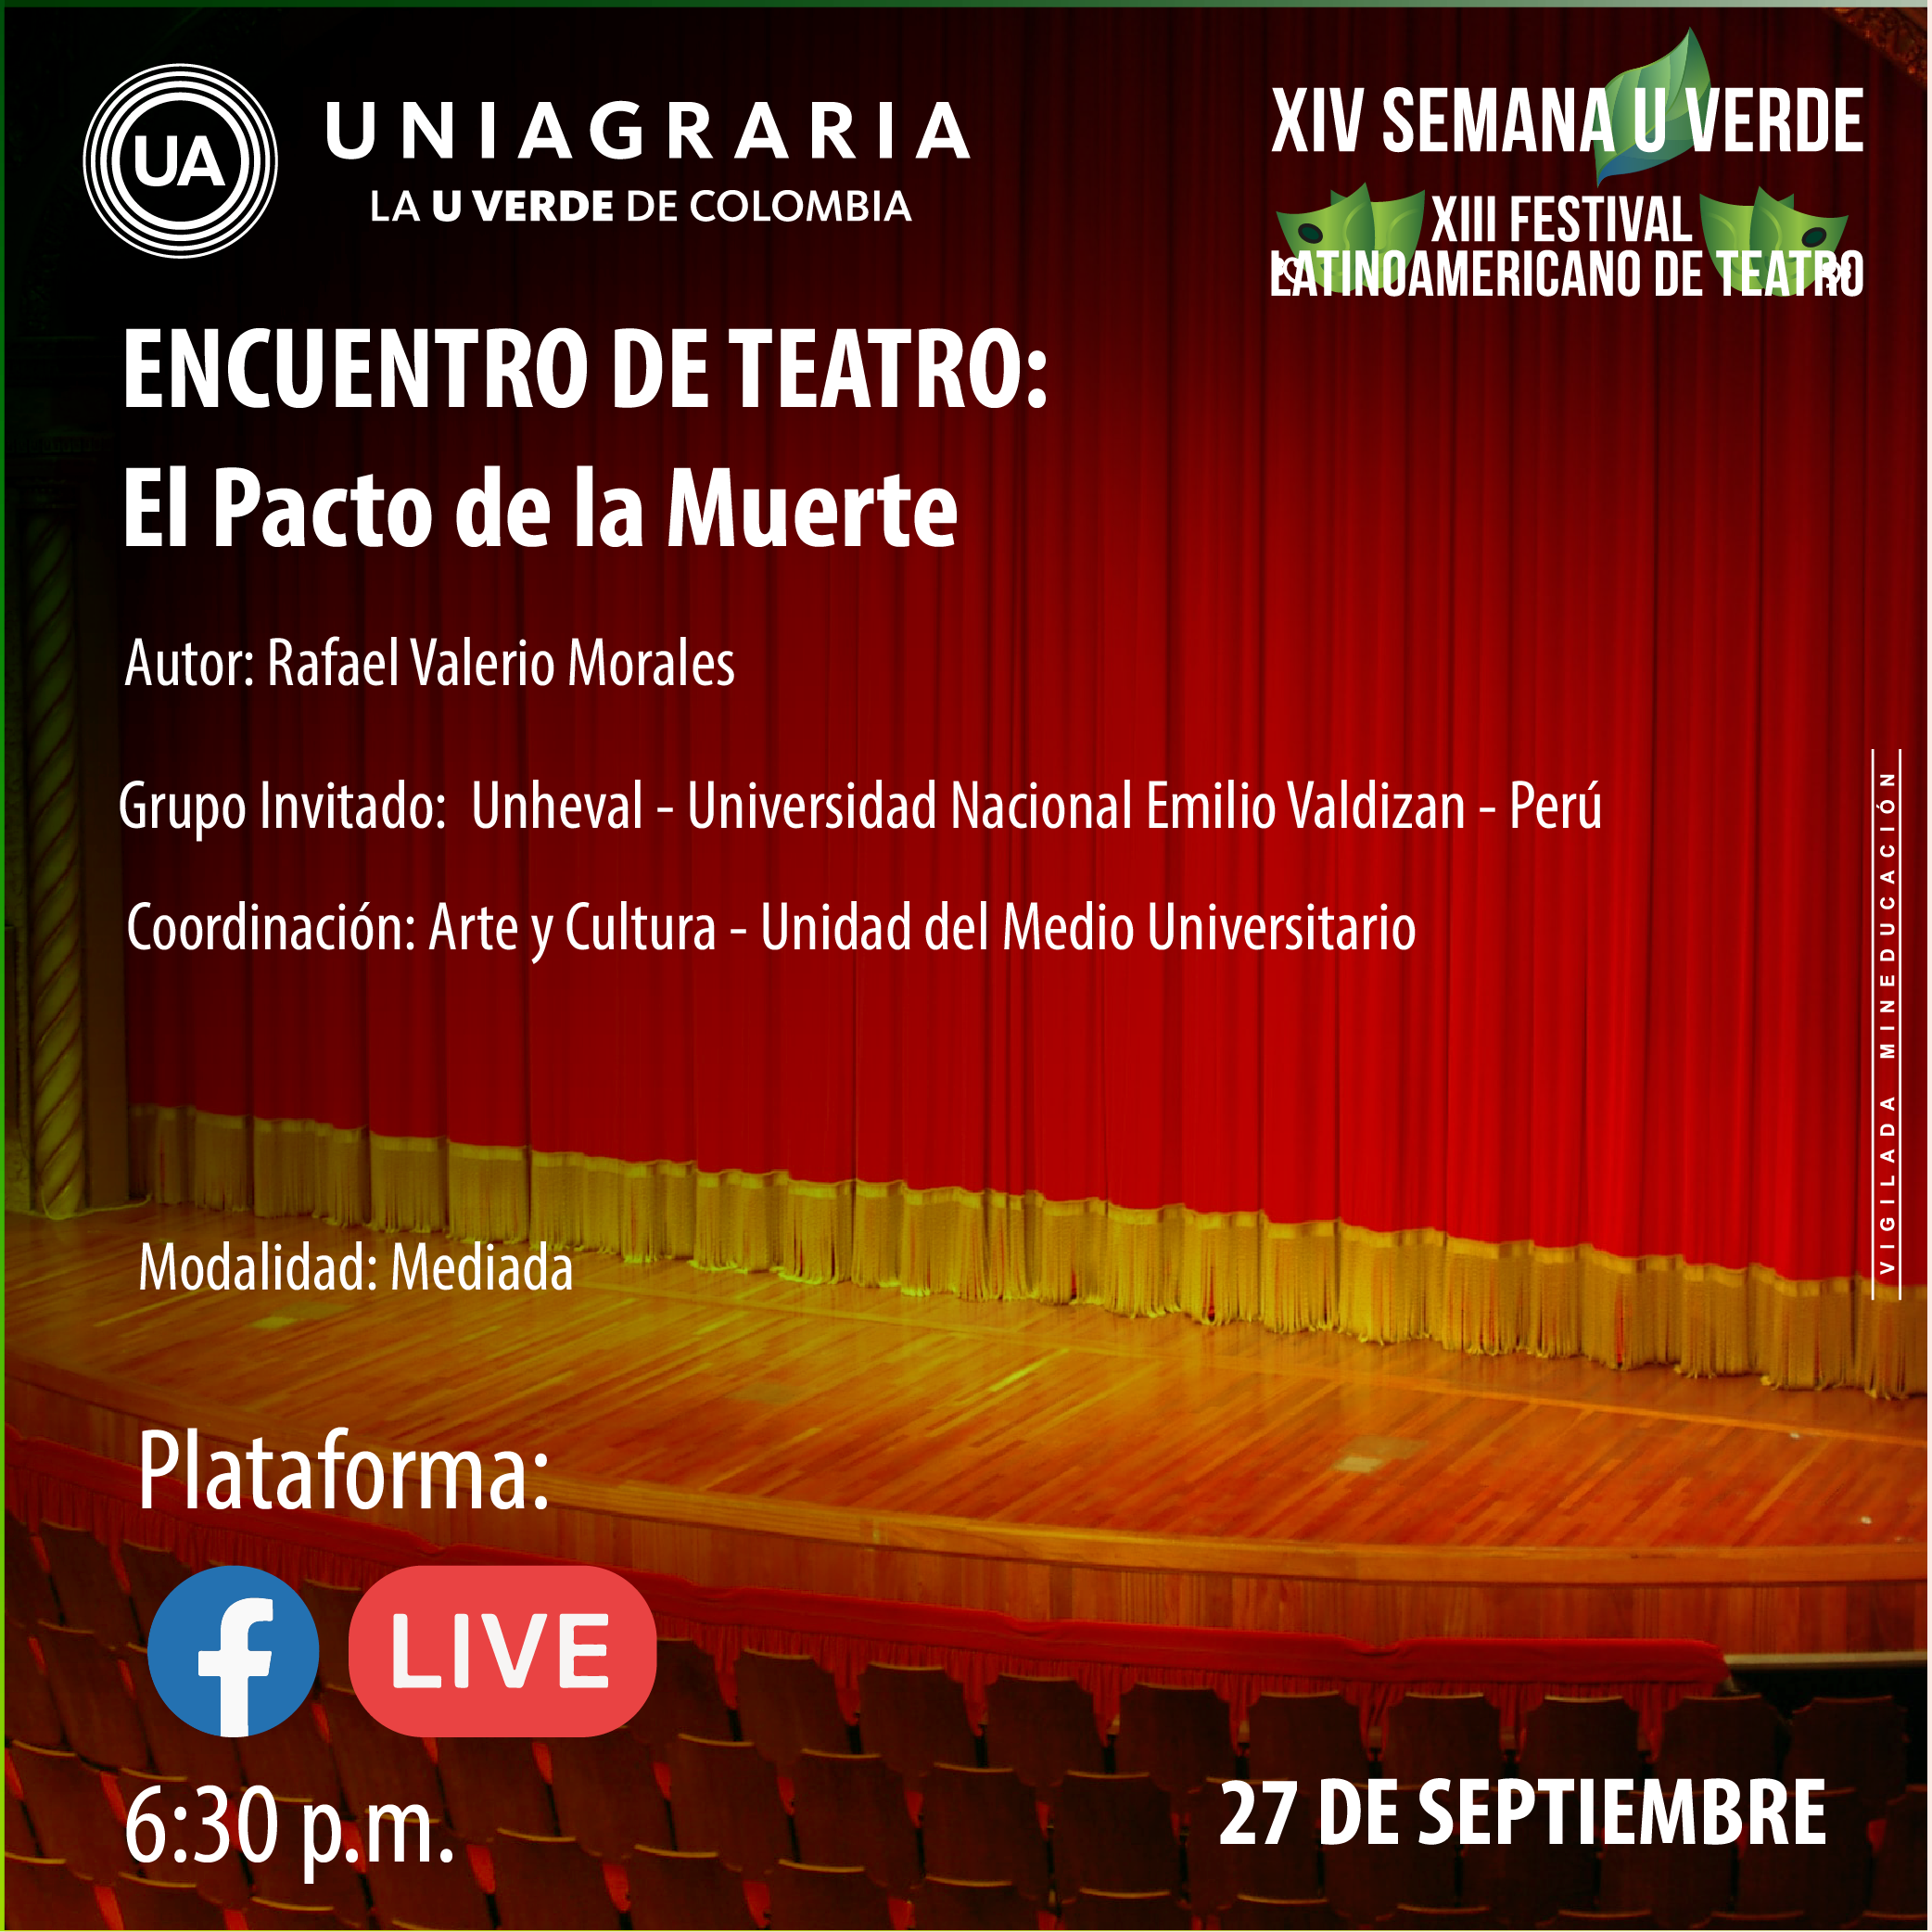 XIV Semana U Verde: Encuentro de teatro, “El pacto de la muerte”